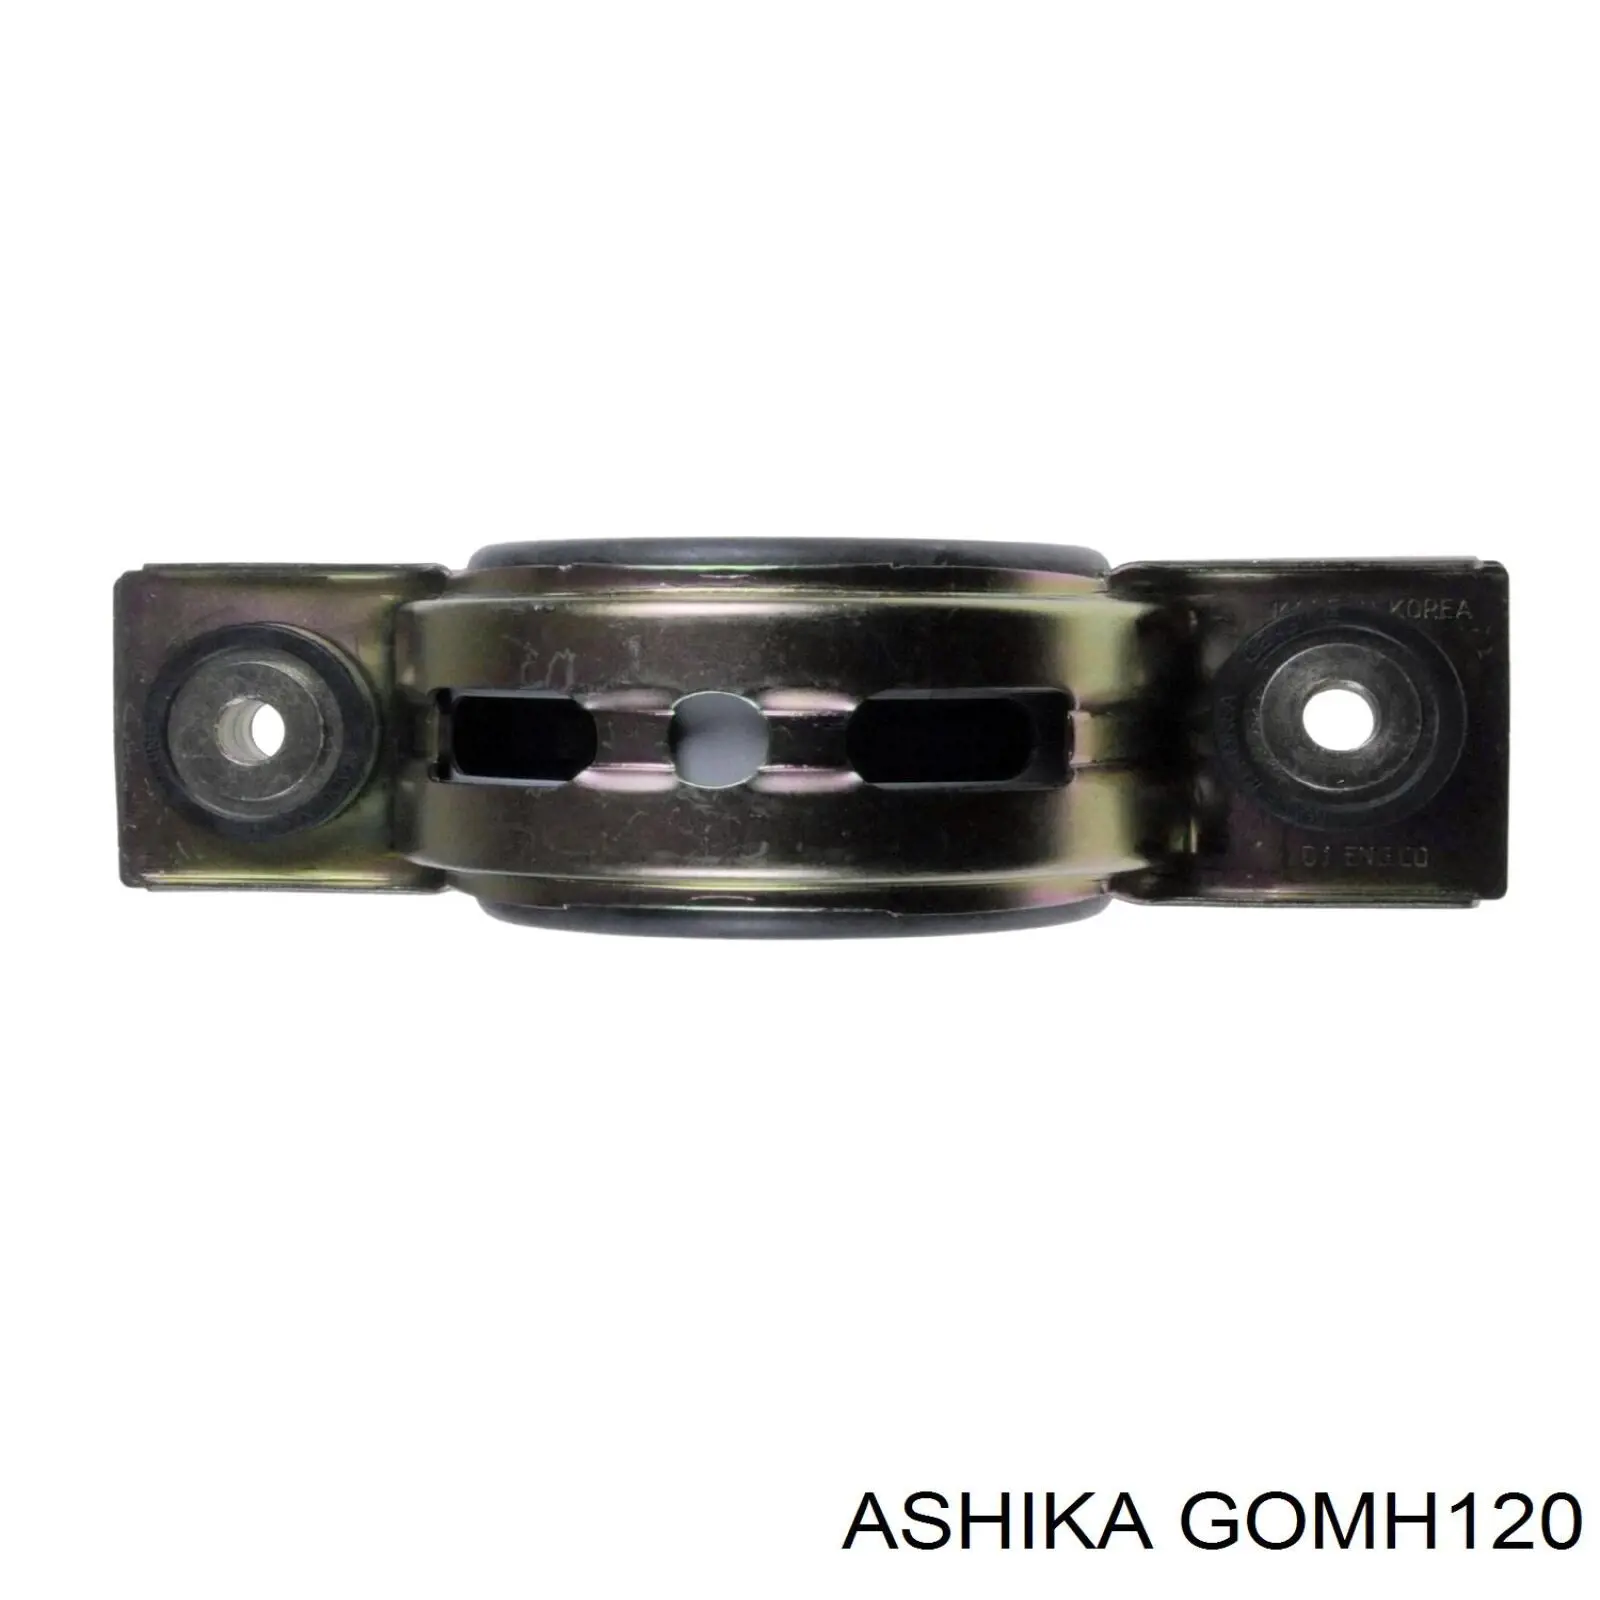 GOM-H120 Ashika suspensión, árbol de transmisión